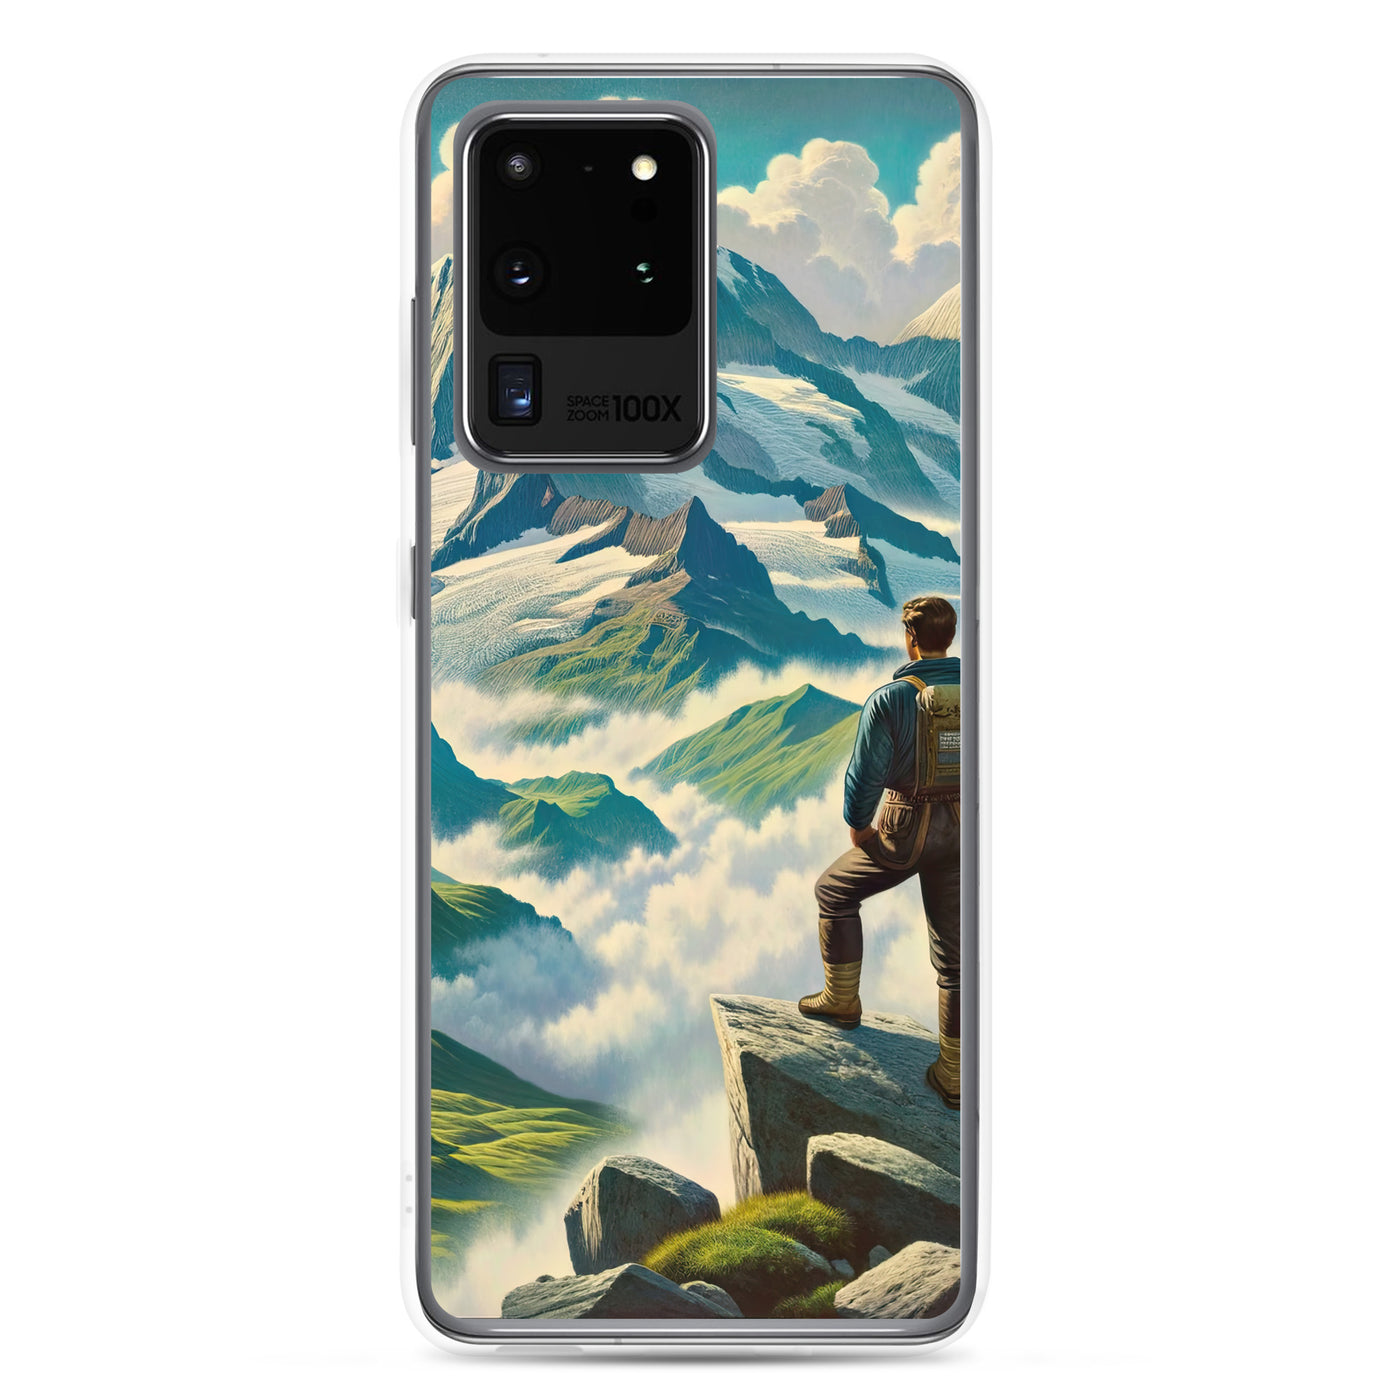 Panoramablick der Alpen mit Wanderer auf einem Hügel und schroffen Gipfeln - Samsung Schutzhülle (durchsichtig) wandern xxx yyy zzz Samsung Galaxy S20 Ultra